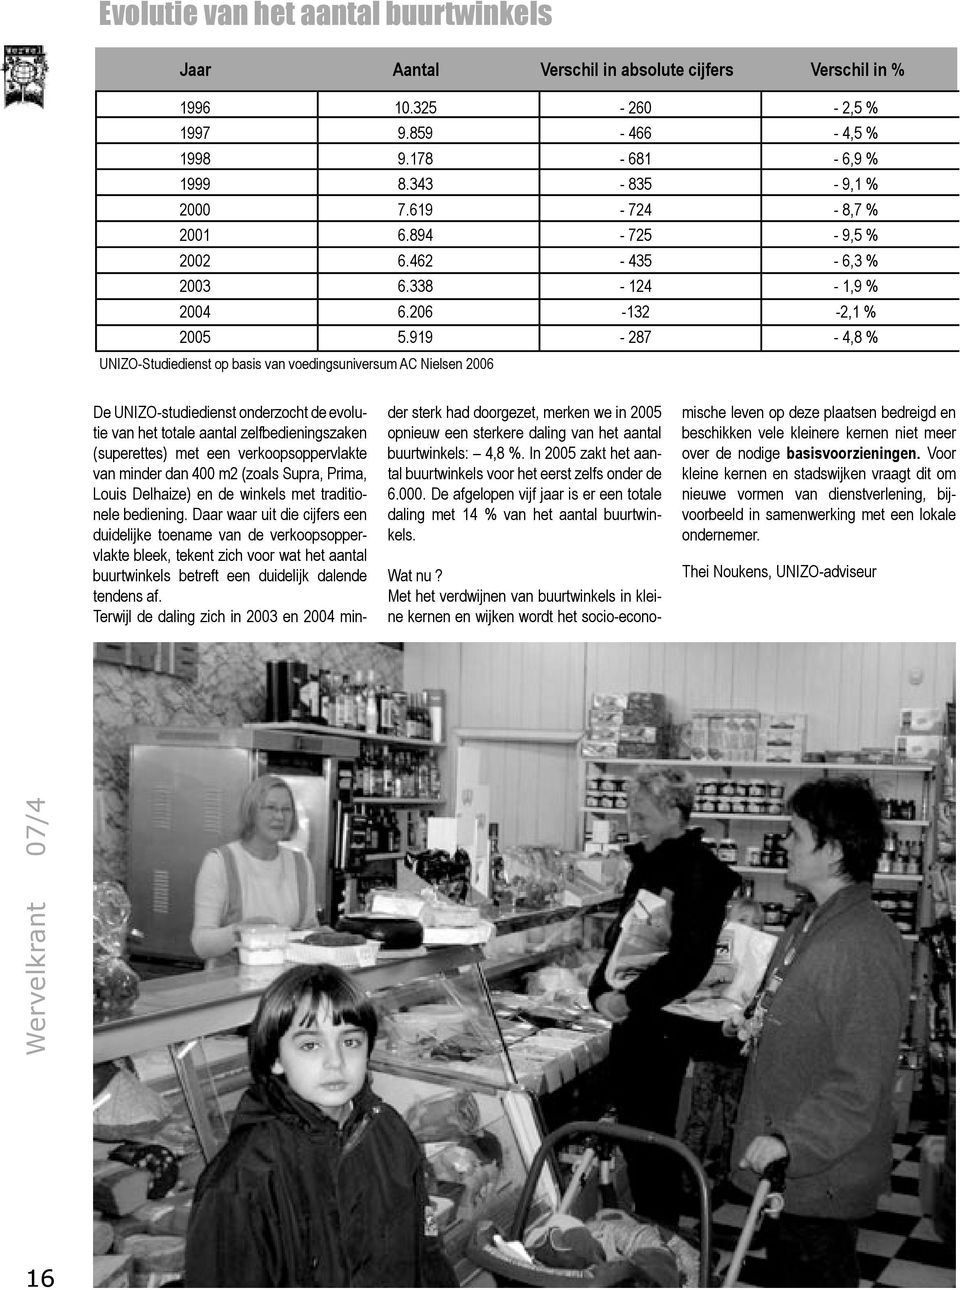 UNIZO-studiedienst onderzocht de evolutie van het totale aantal zelfbedieningszaken (superettes) met een verkoopsoppervlakte van minder dan 400 m2 (zoals Supra, Prima, Louis Delhaize) en de winkels